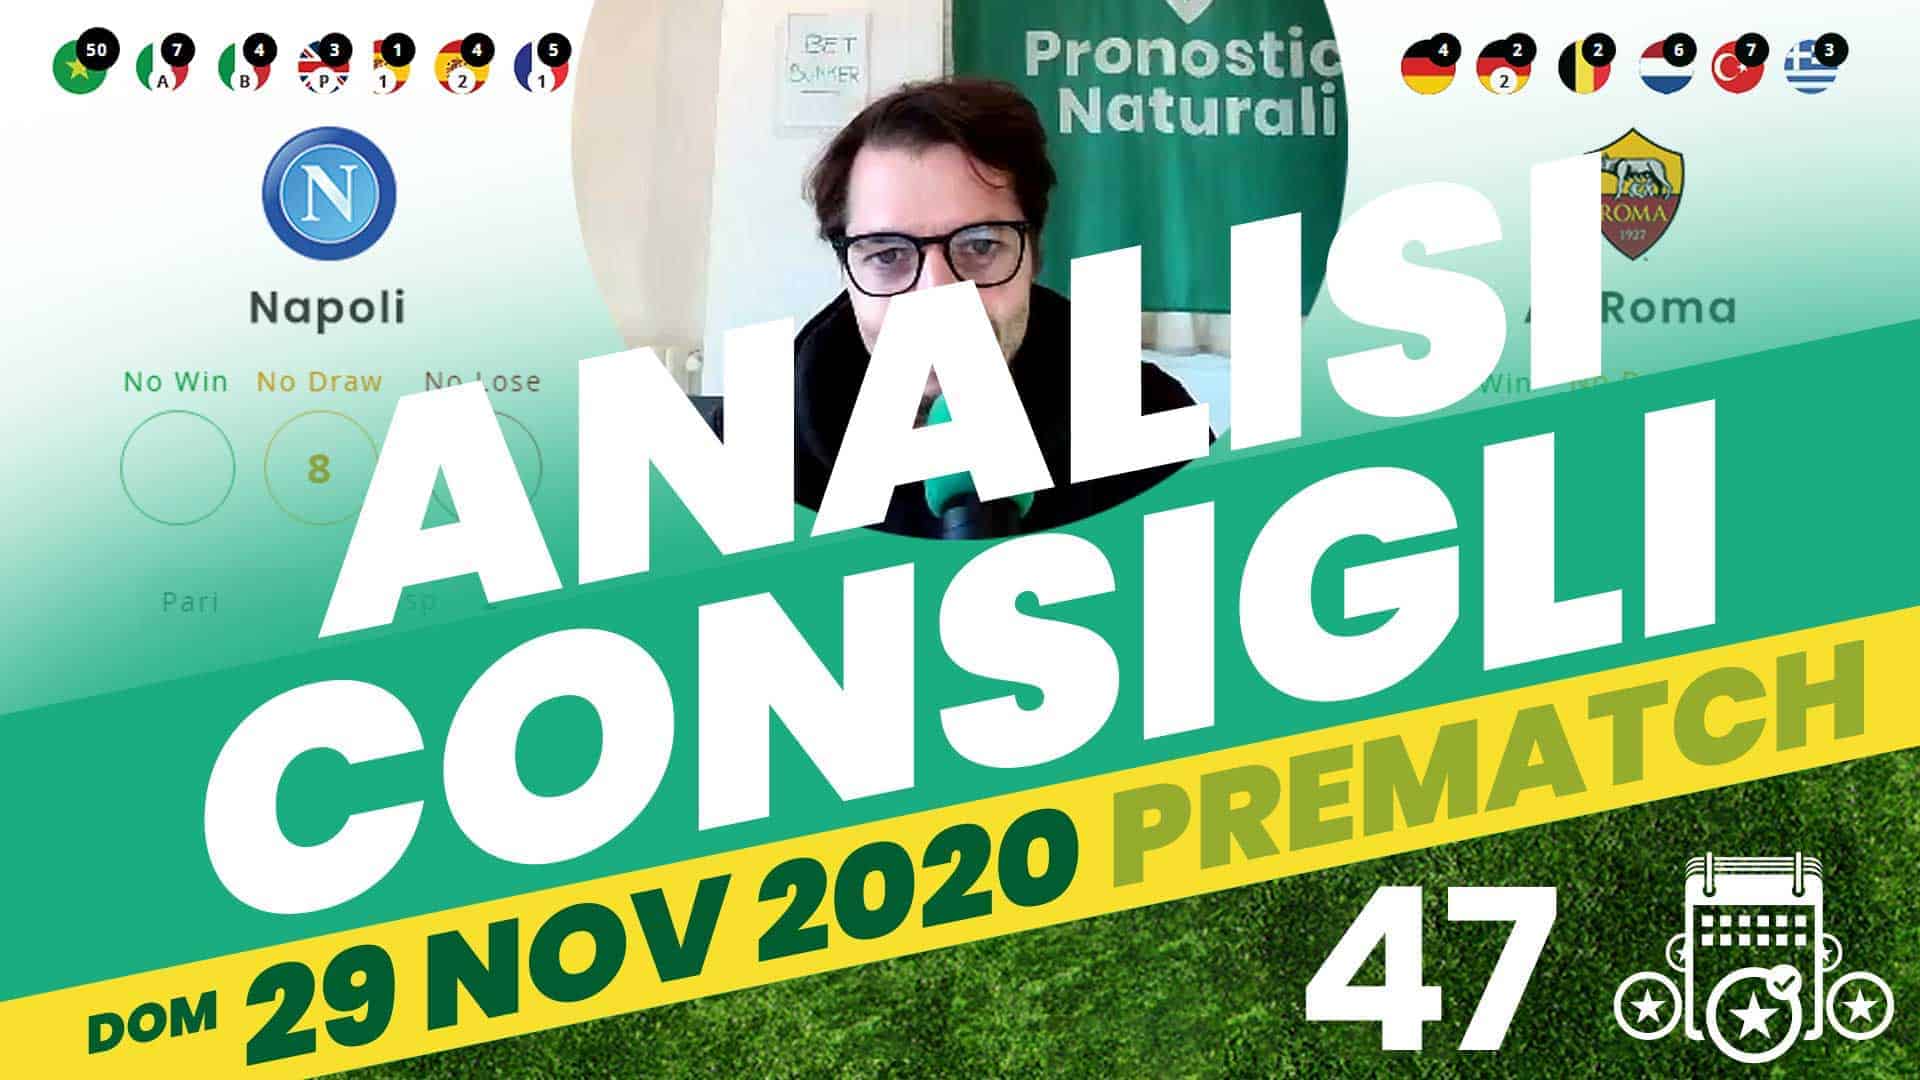 Pronostici Naturali Video Analisi Scommesse Betting Calcio Pre Partite Domenica 29 Novembre 2020